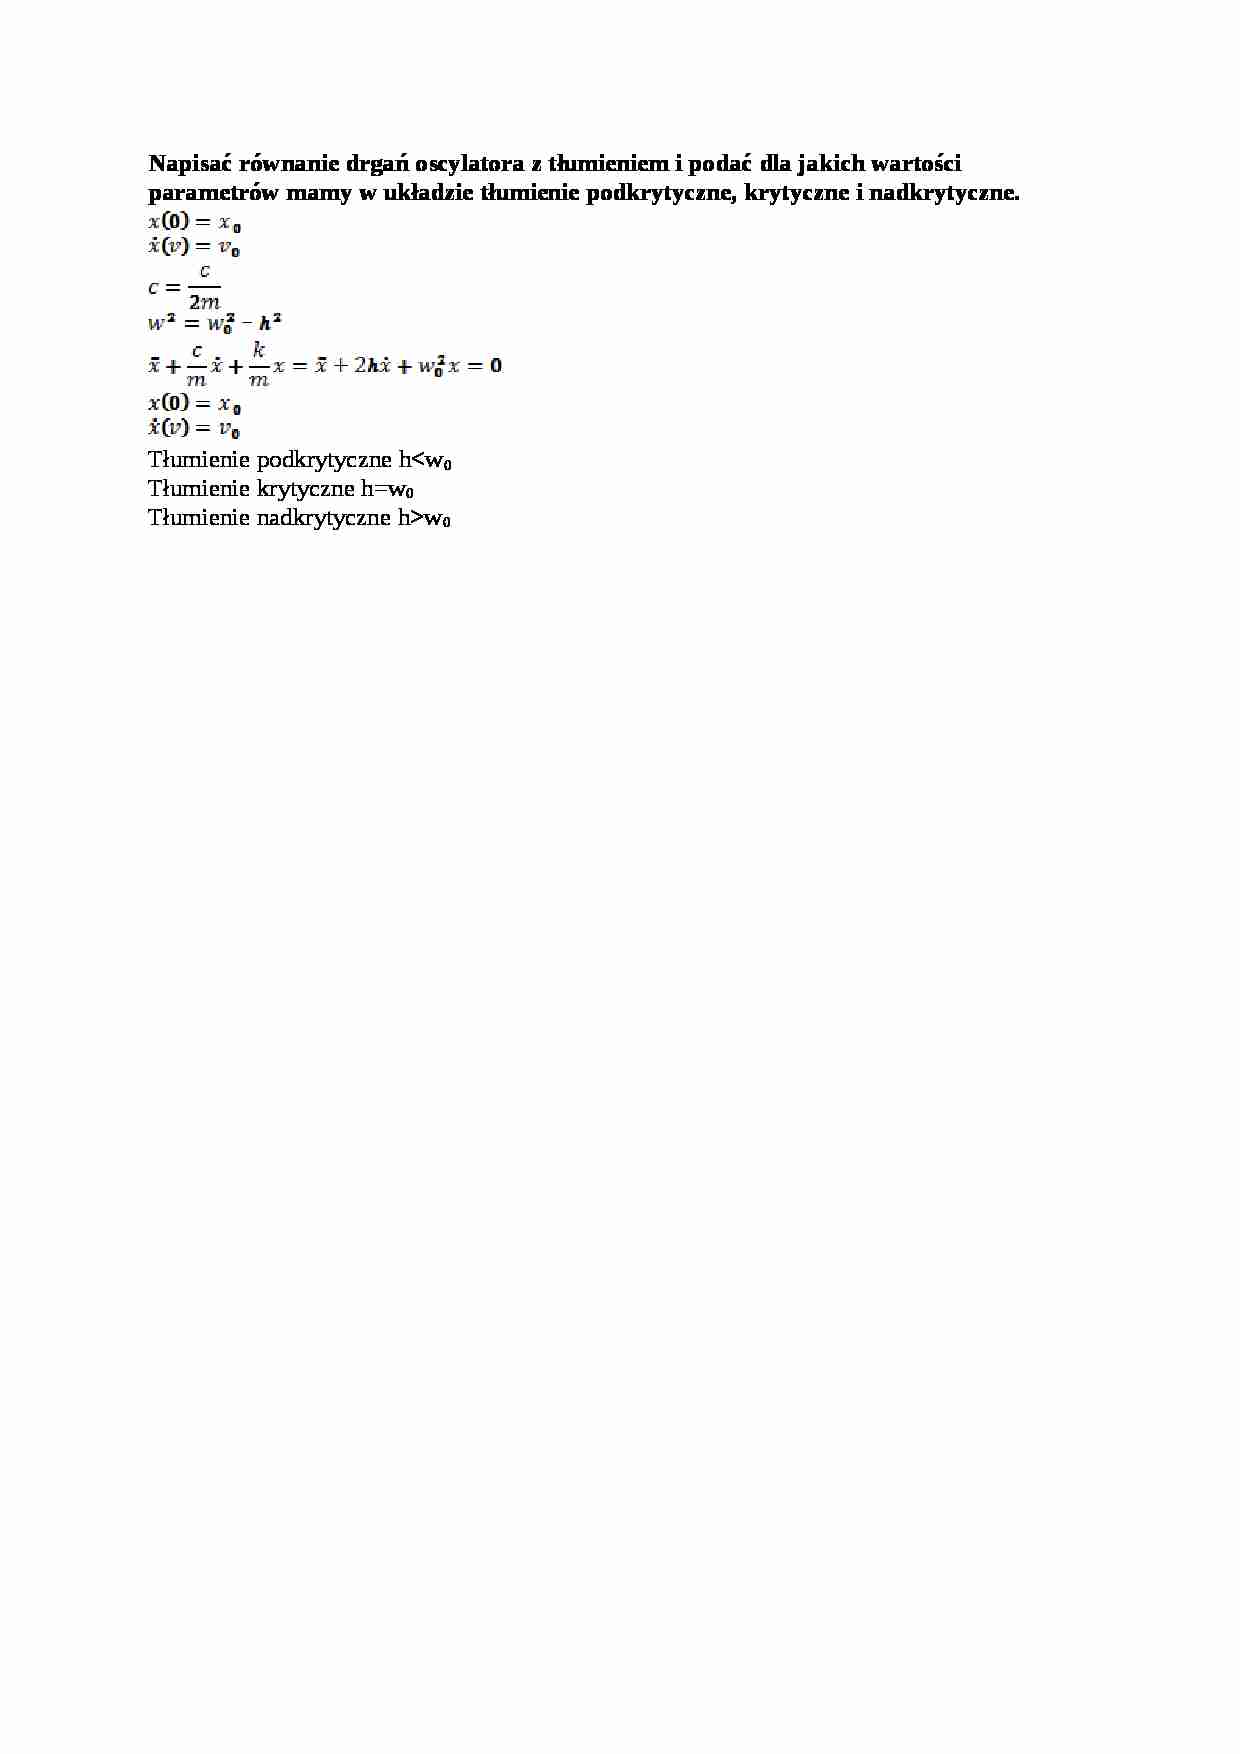 Równanie drgań oscylatora z tłumieniem - strona 1